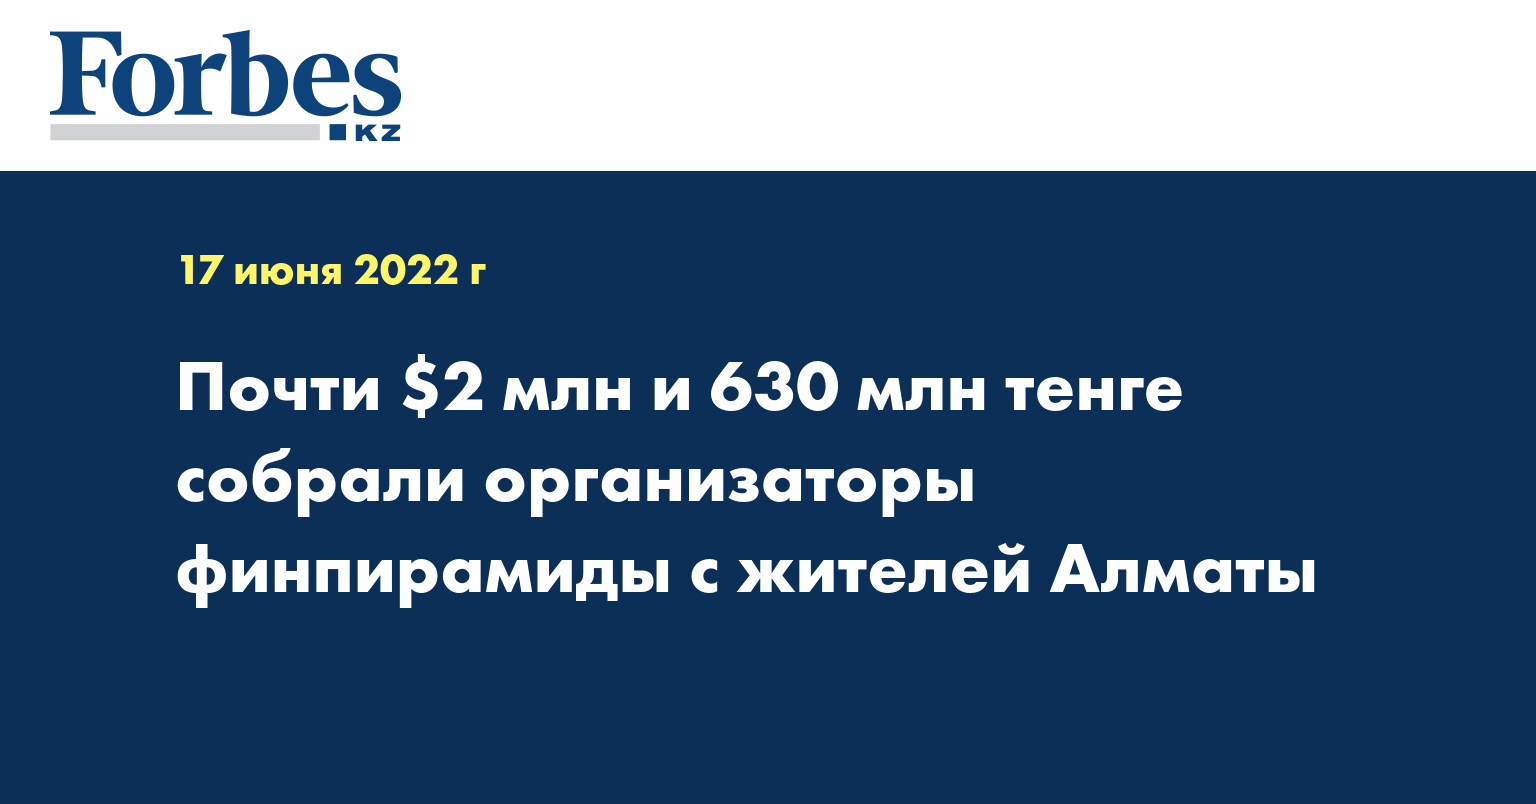 Почти $2 млн и 630 млн тенге собрали организаторы финпирамиды с жителей Алматы